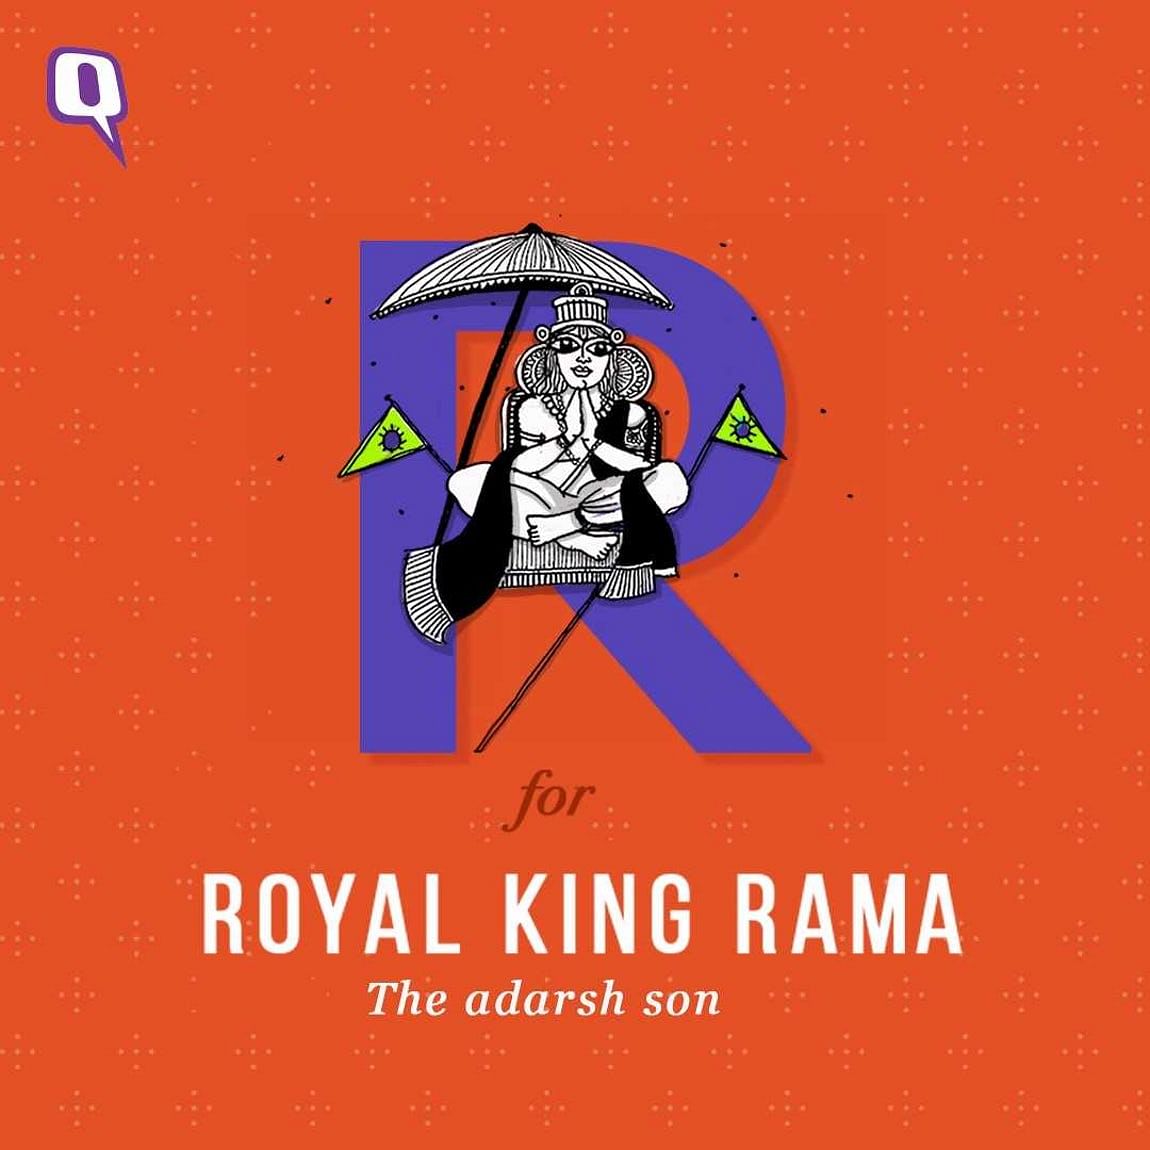 दशहरे के दिन रामायण के बारे में जानें कुछ खास बातें.